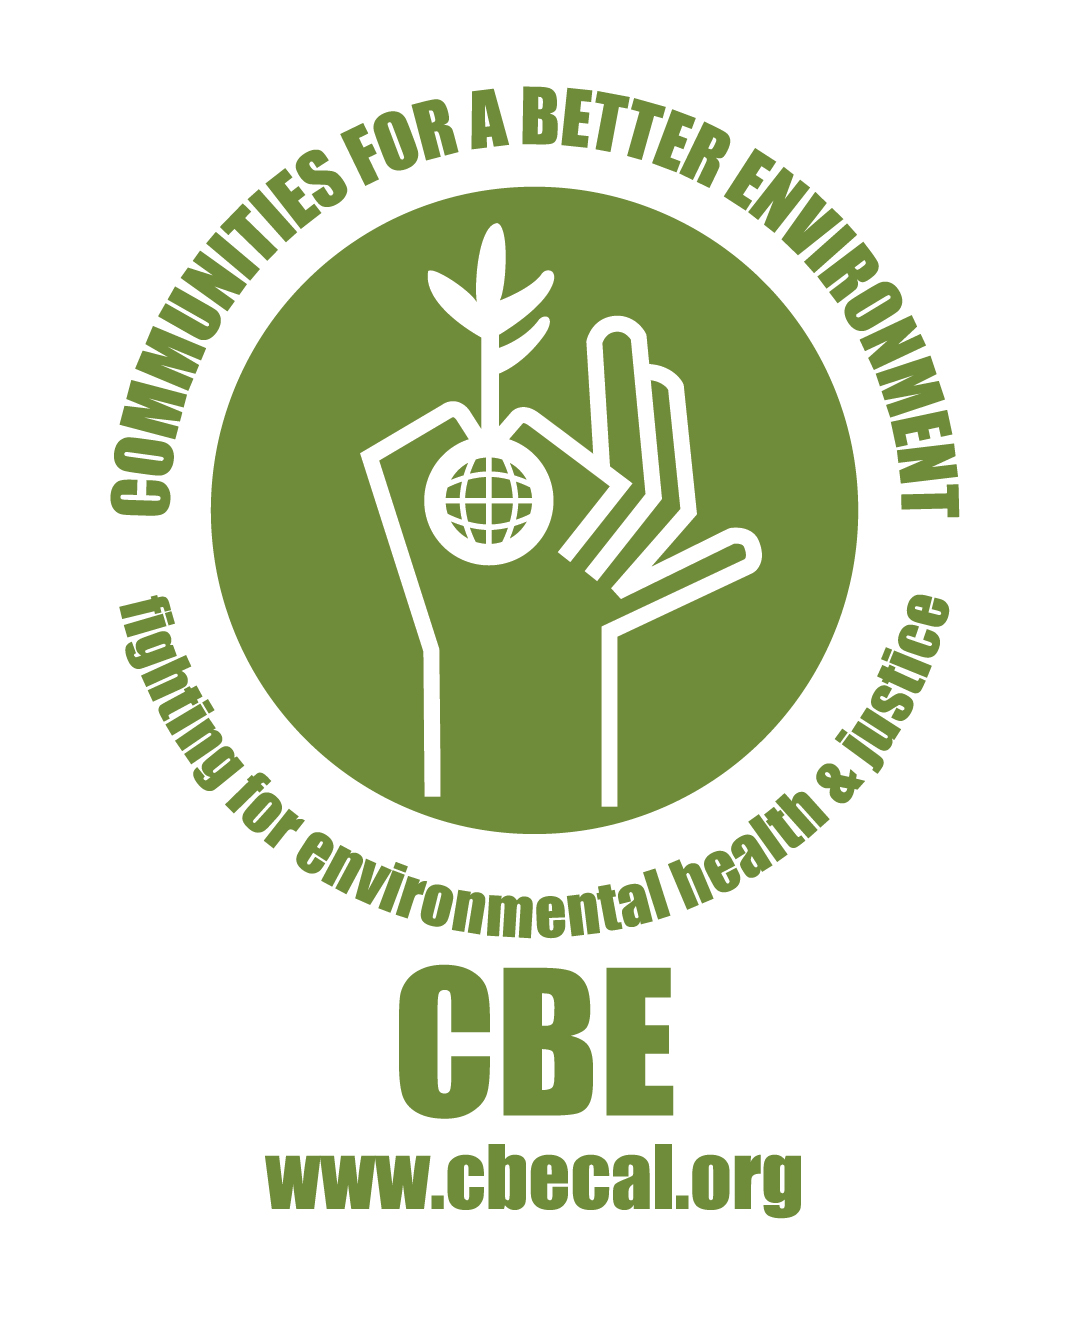 الشعار ، يقول مجتمعات من أجل بيئة أفضل تكافح من أجل الصحة البيئية والعدالة ، بيد تحمل التوضيح البذور